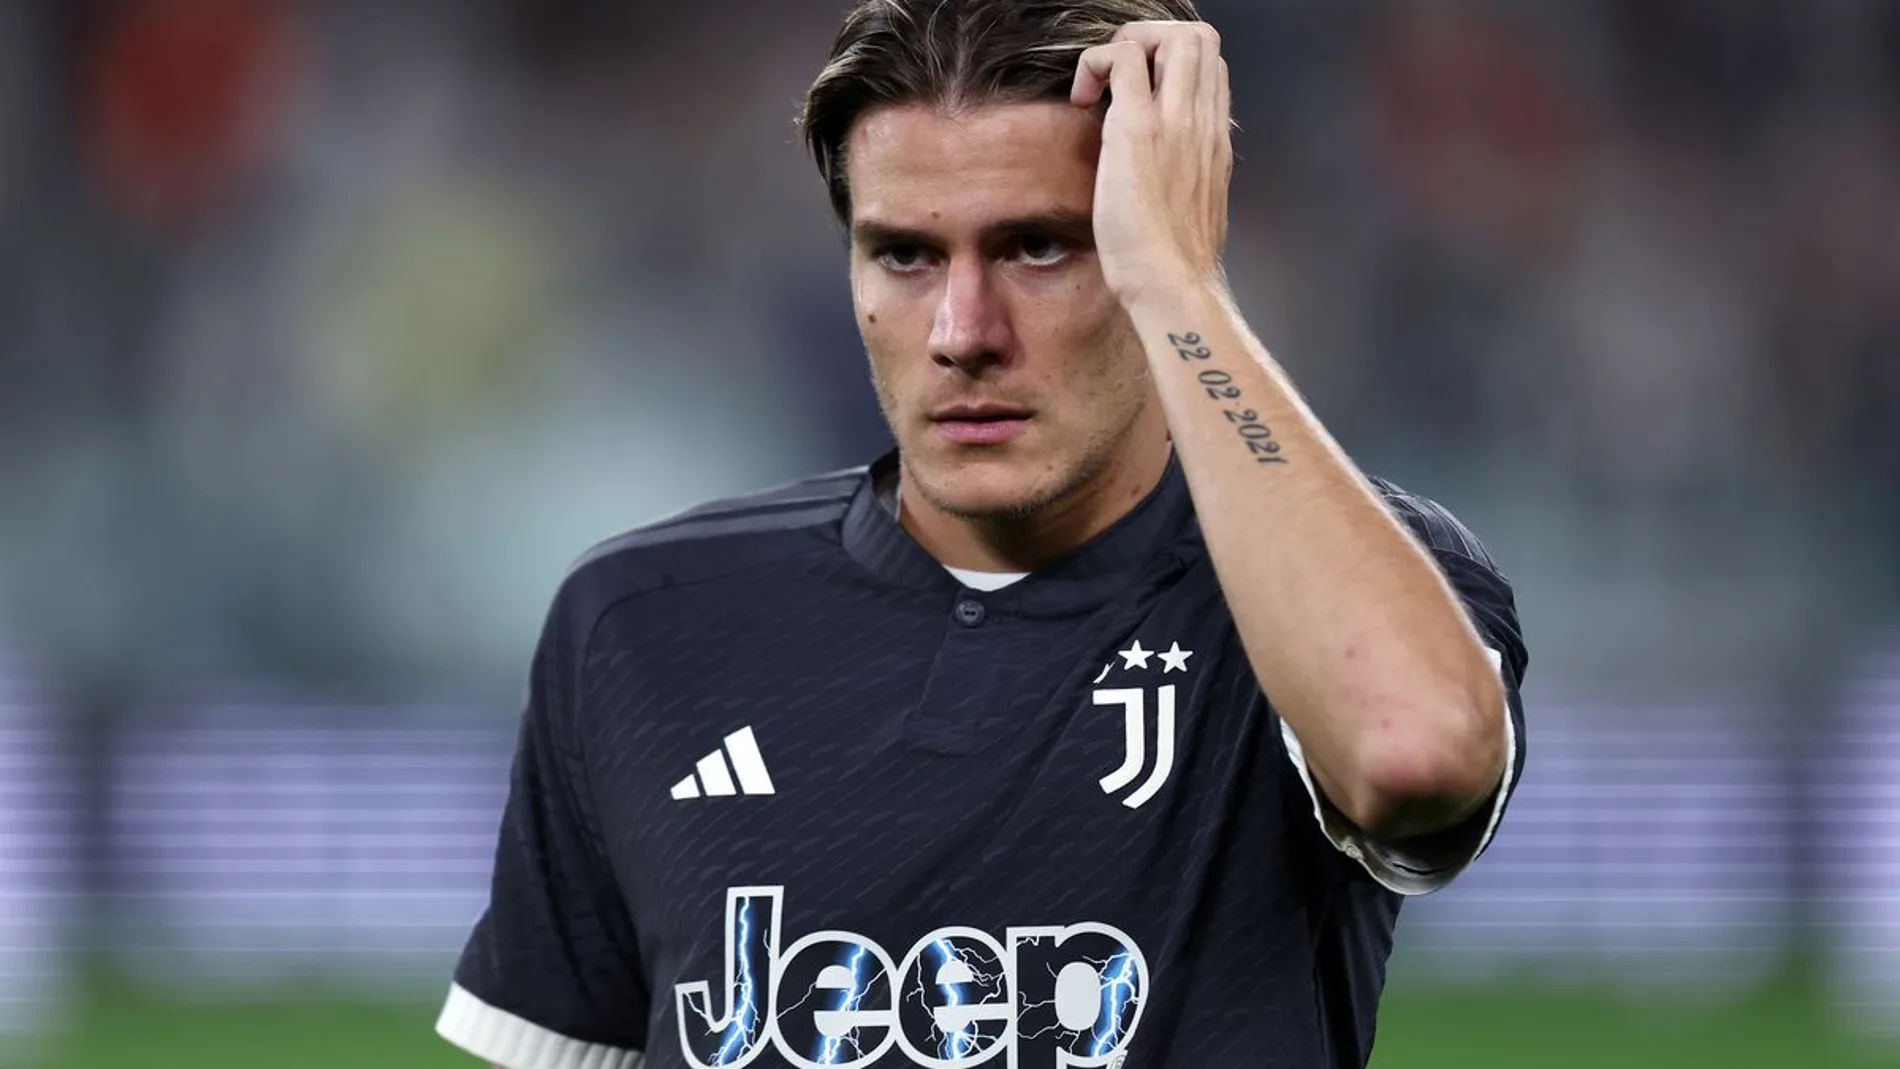 Fagioli (Juventus), condenado a 7 meses sin jugar por apuestas ilegales